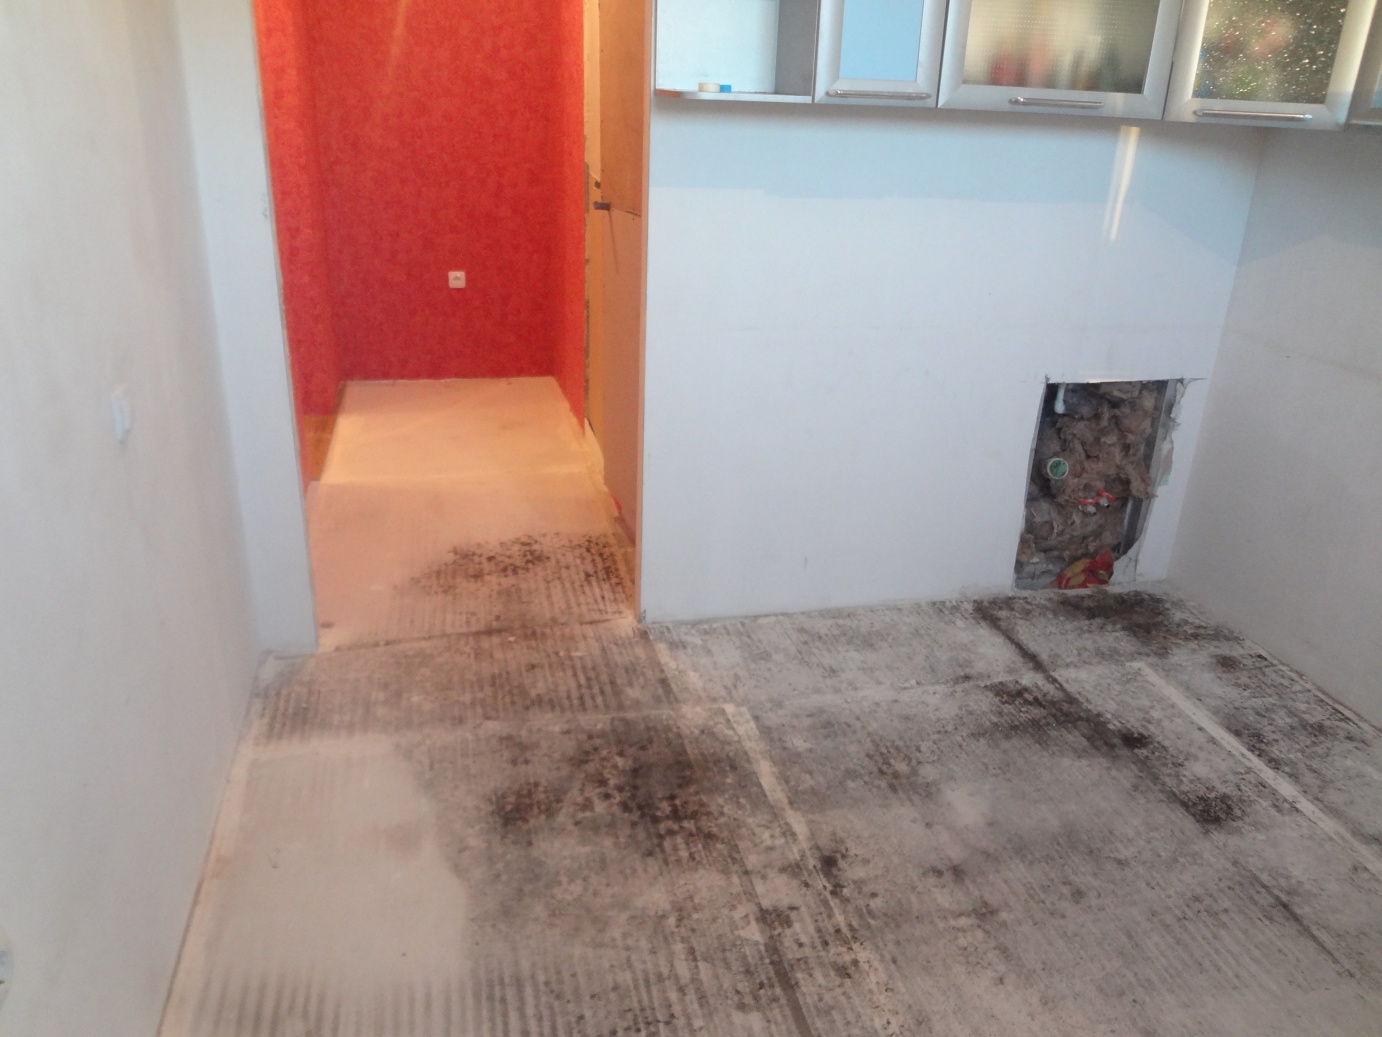 Плесень на бетонном полу под линолеумом: что делать, как убрать, чем обработать